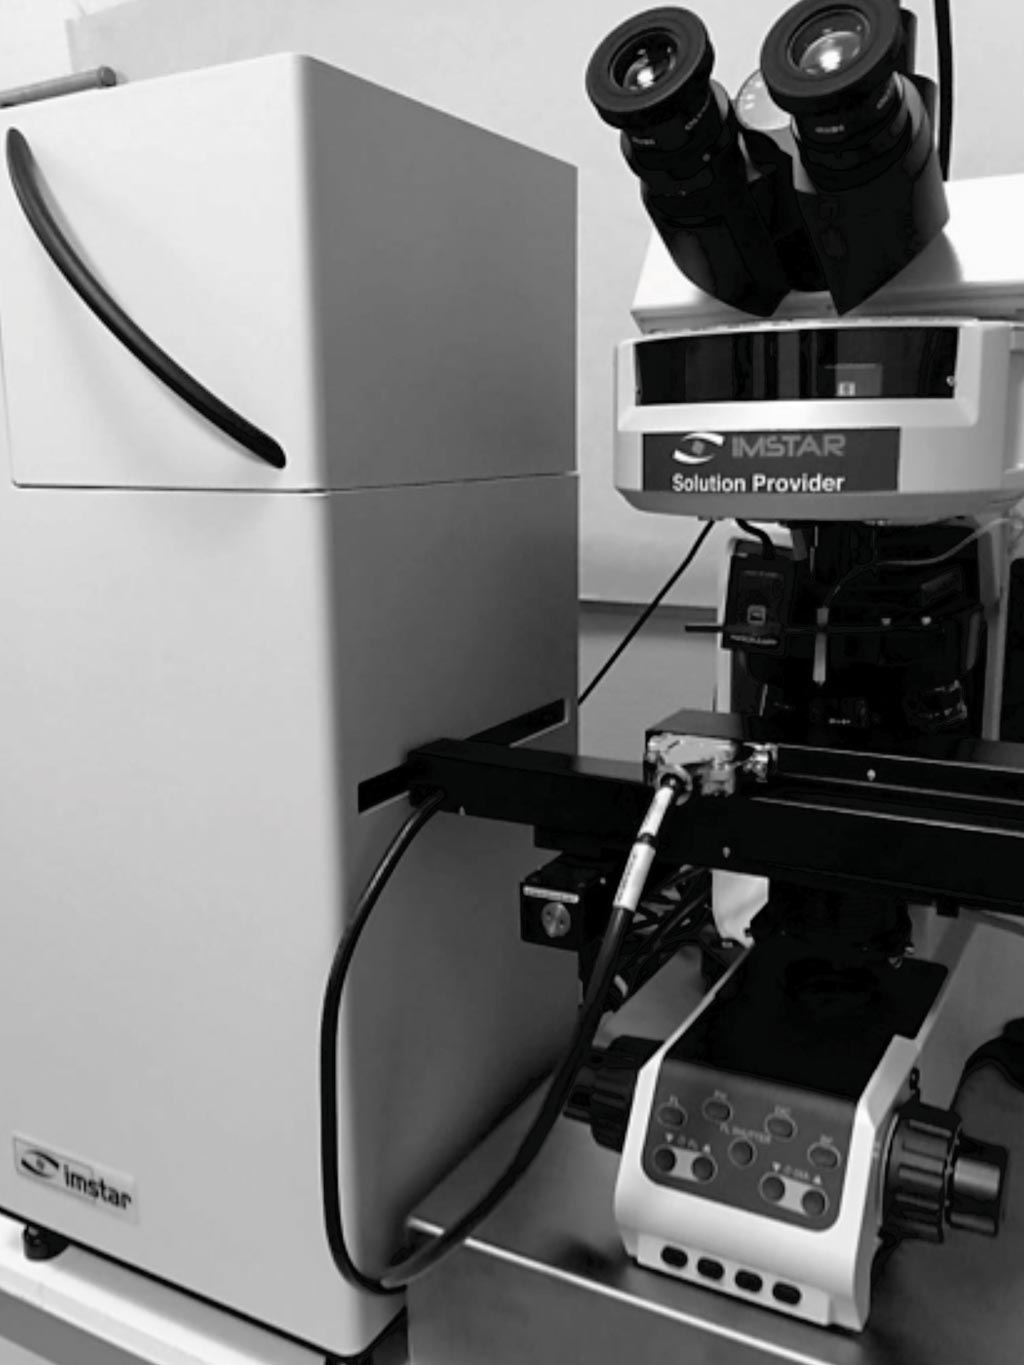 Полностью автоматизированный модуль системы считывателя-анализатора Pathfinder позволяет оптимизировать мультимодальное сканирование, обнаружение и анализ клеток (фото предоставлено IMSTAR).